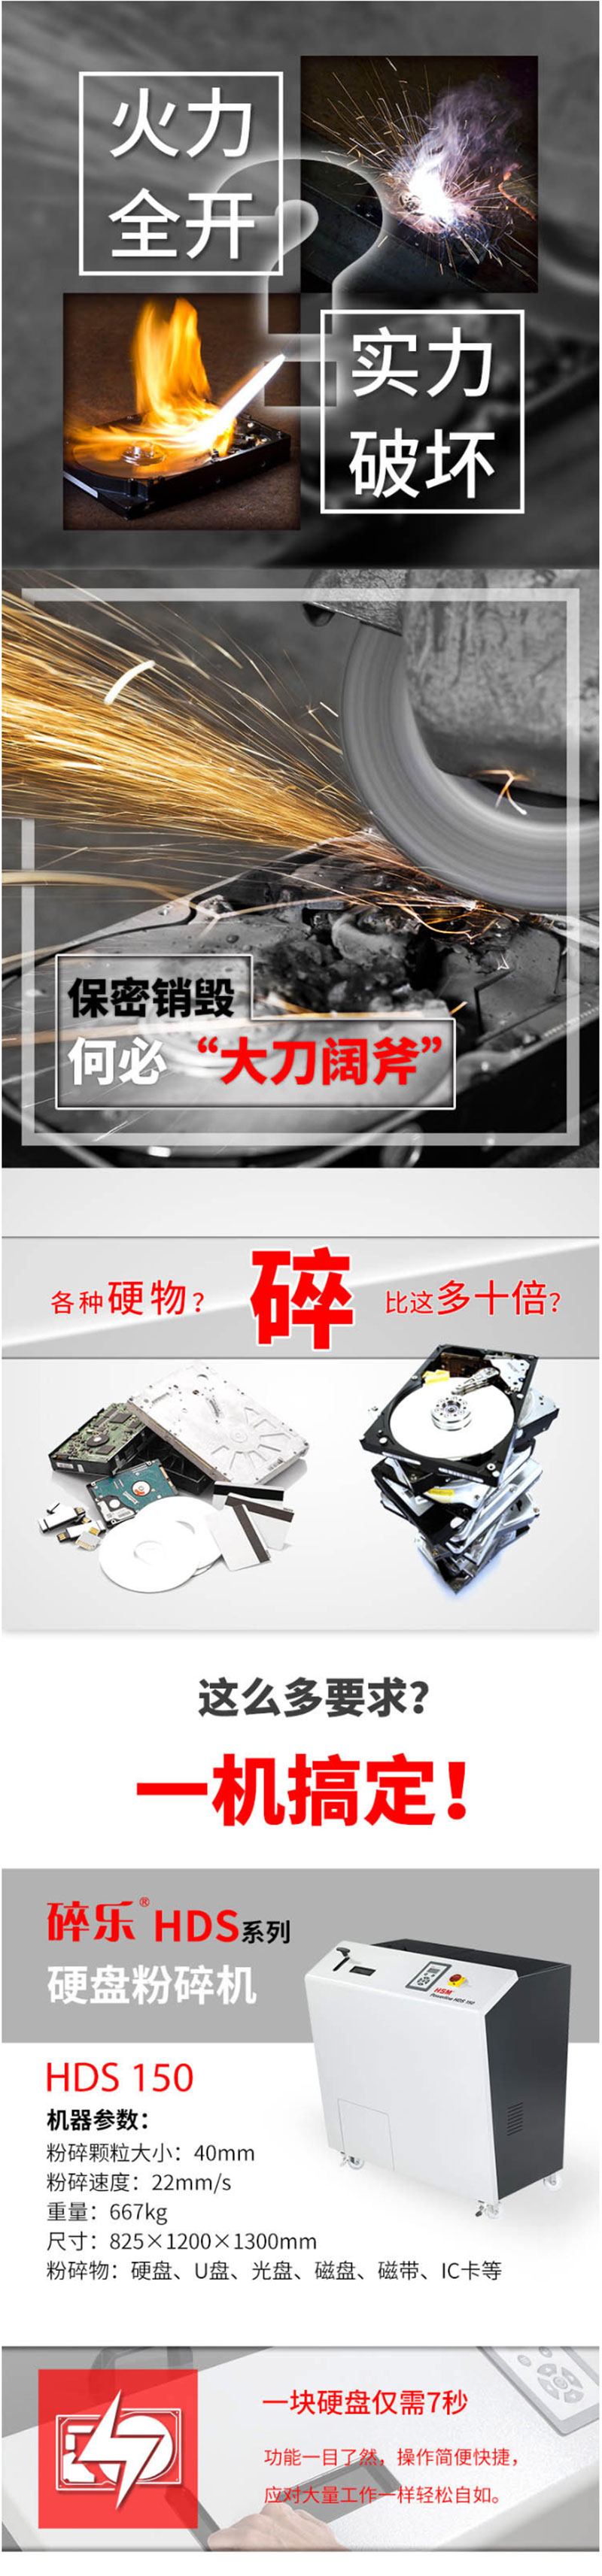 碎乐 Ceiro-HDS150碎纸机 专业光盘、U盘、硬盘粉碎机 硬盘整体粉碎